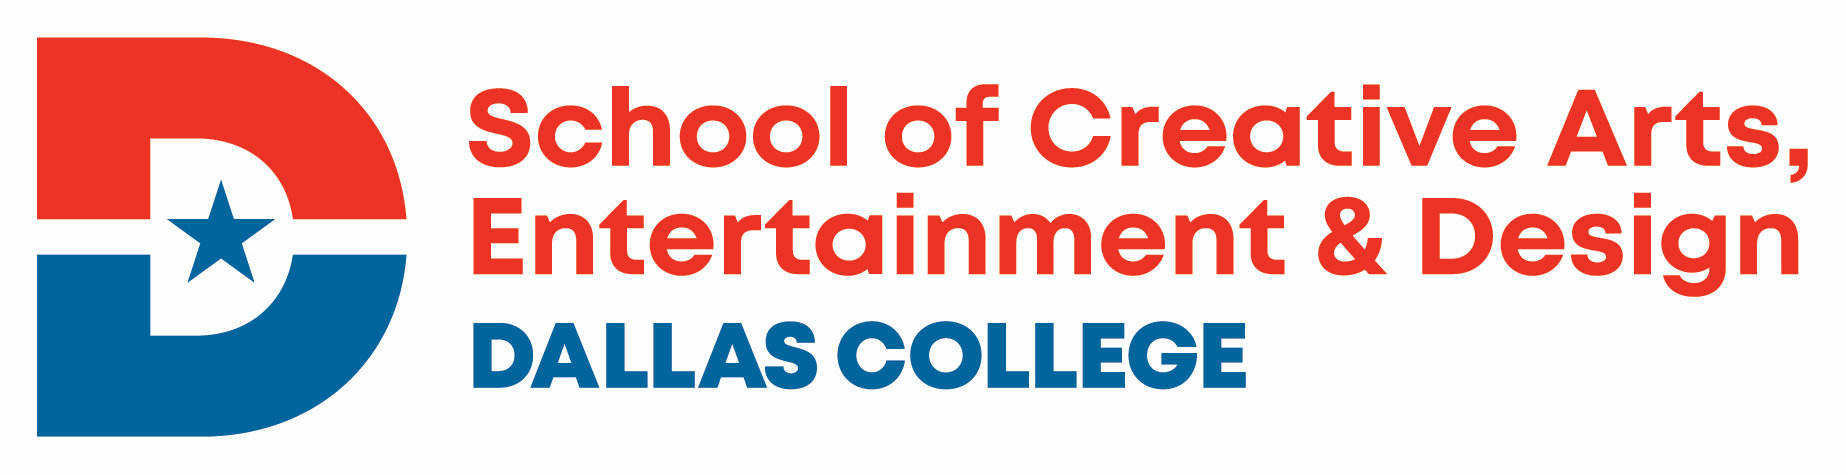 Dallas College, School of Creative Arts, Entertainment and Design